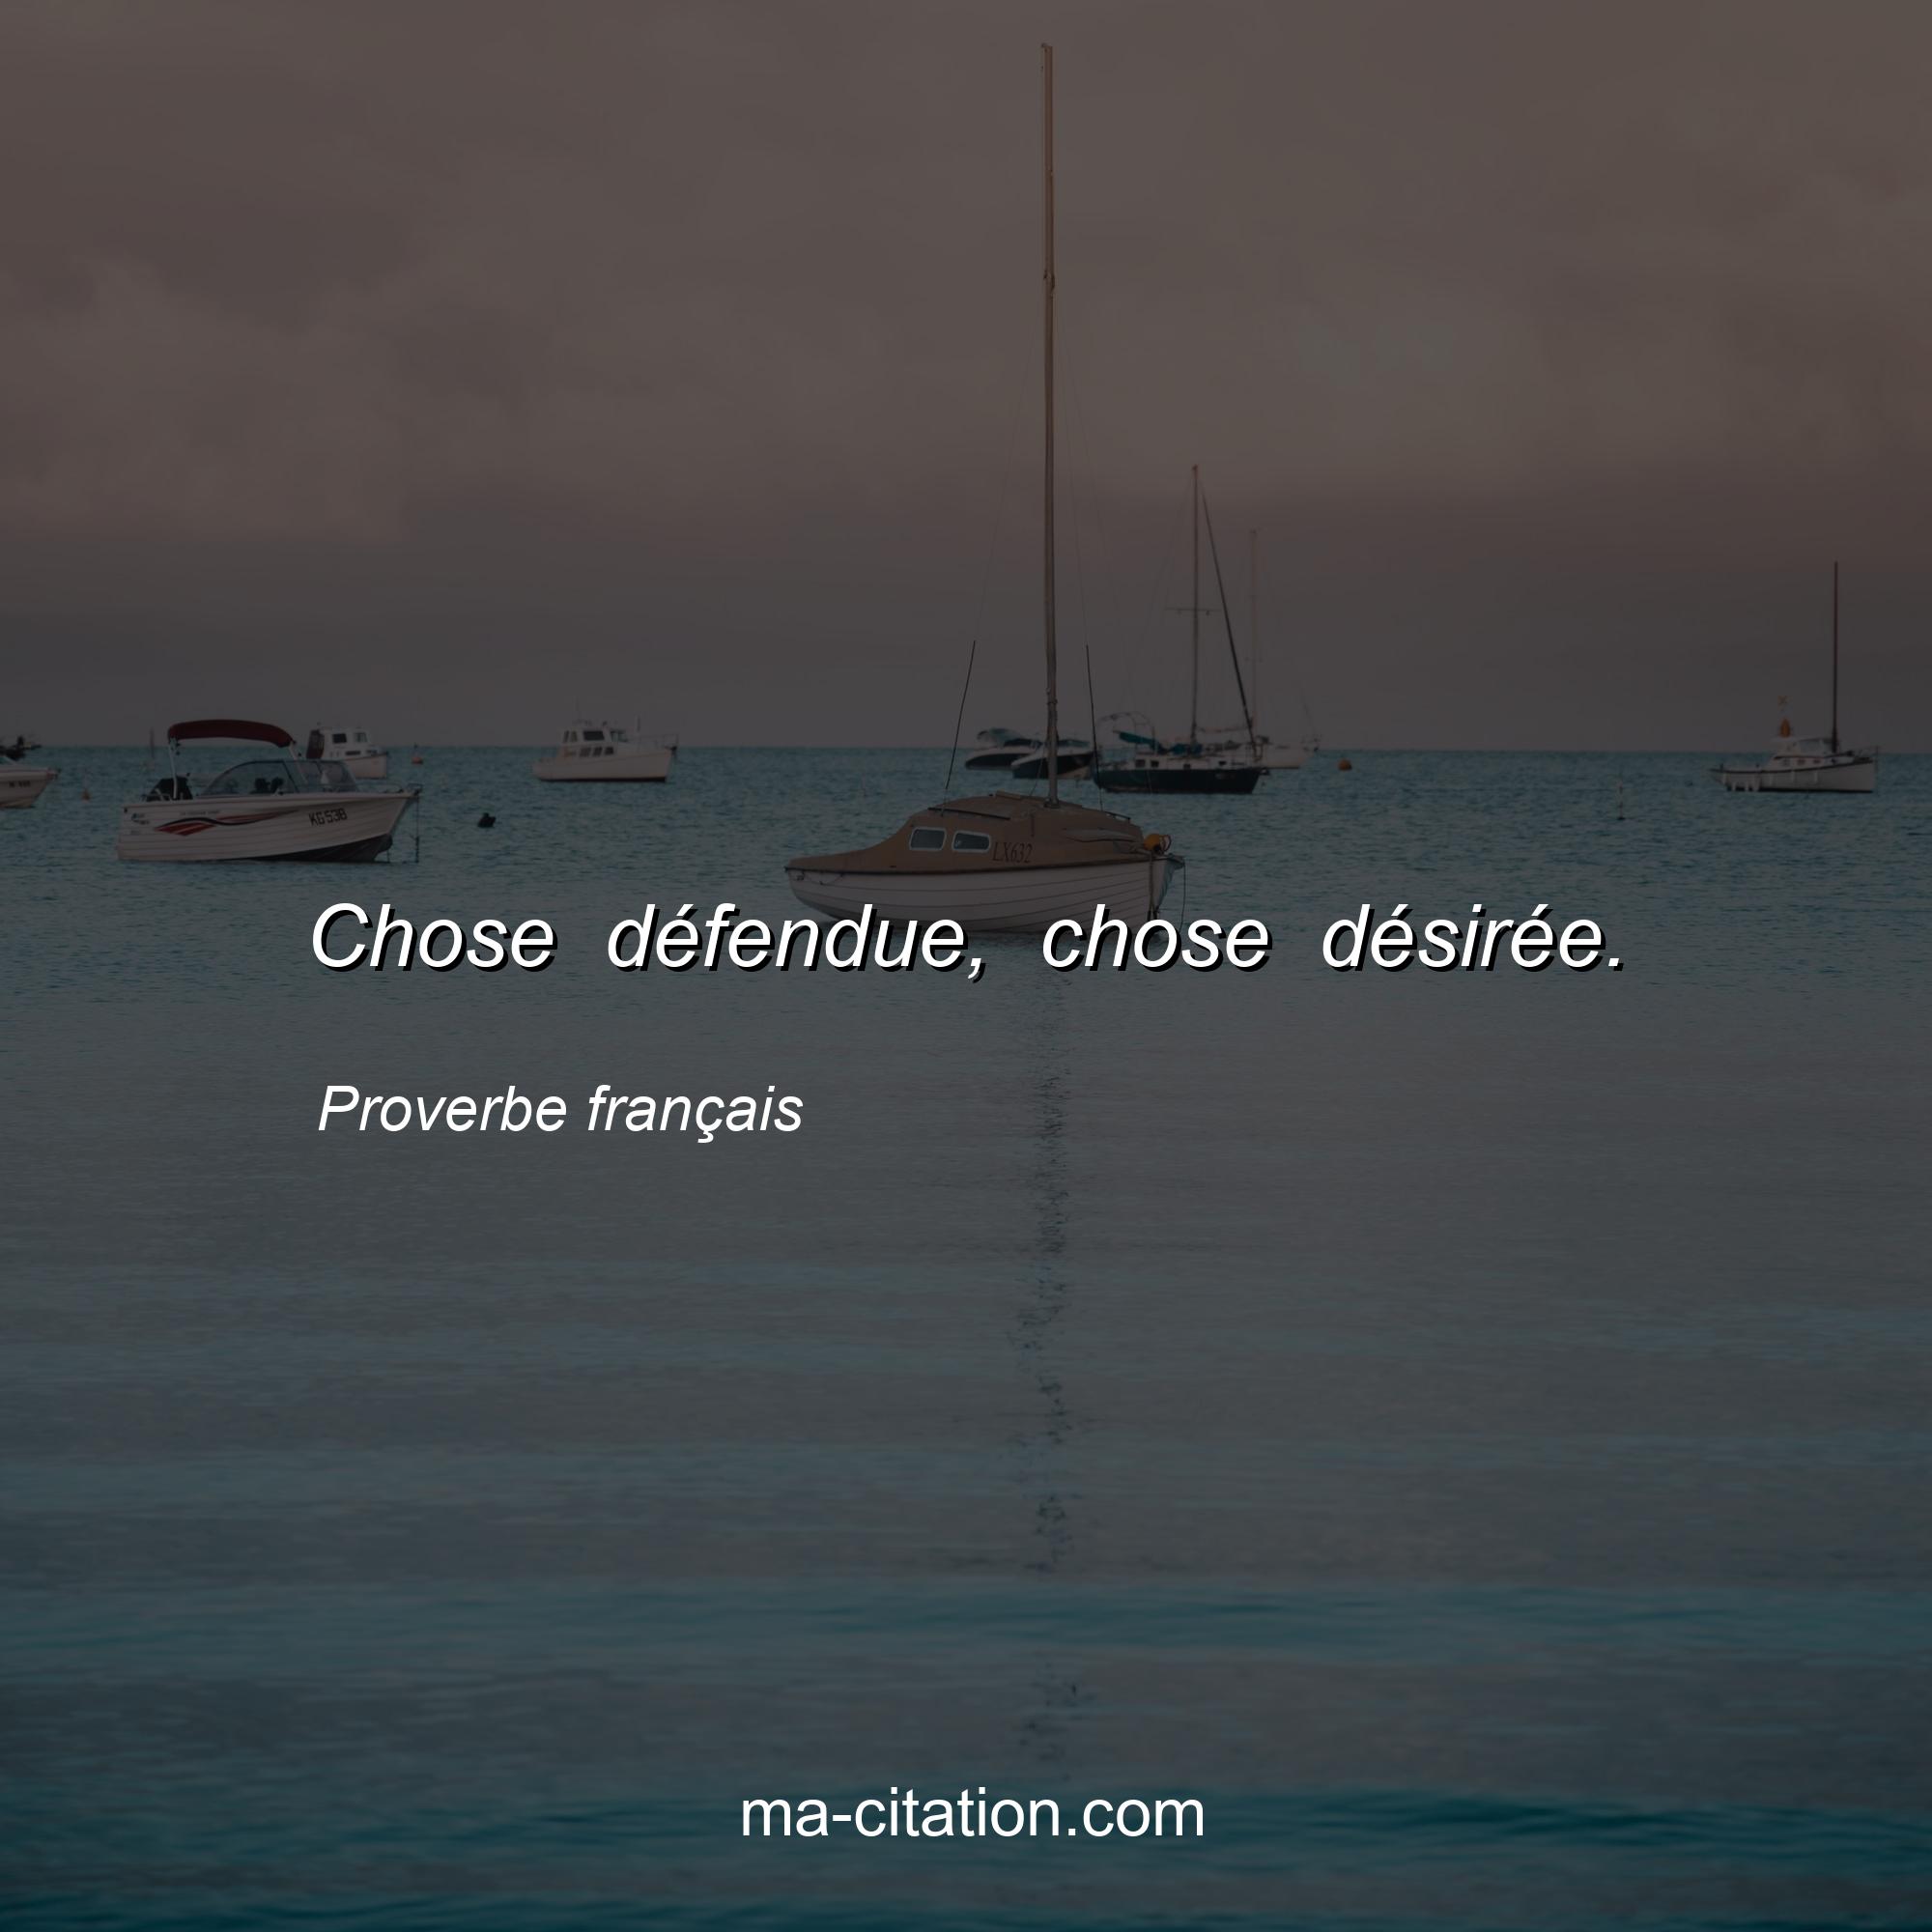 Proverbe français : Chose défendue, chose désirée.